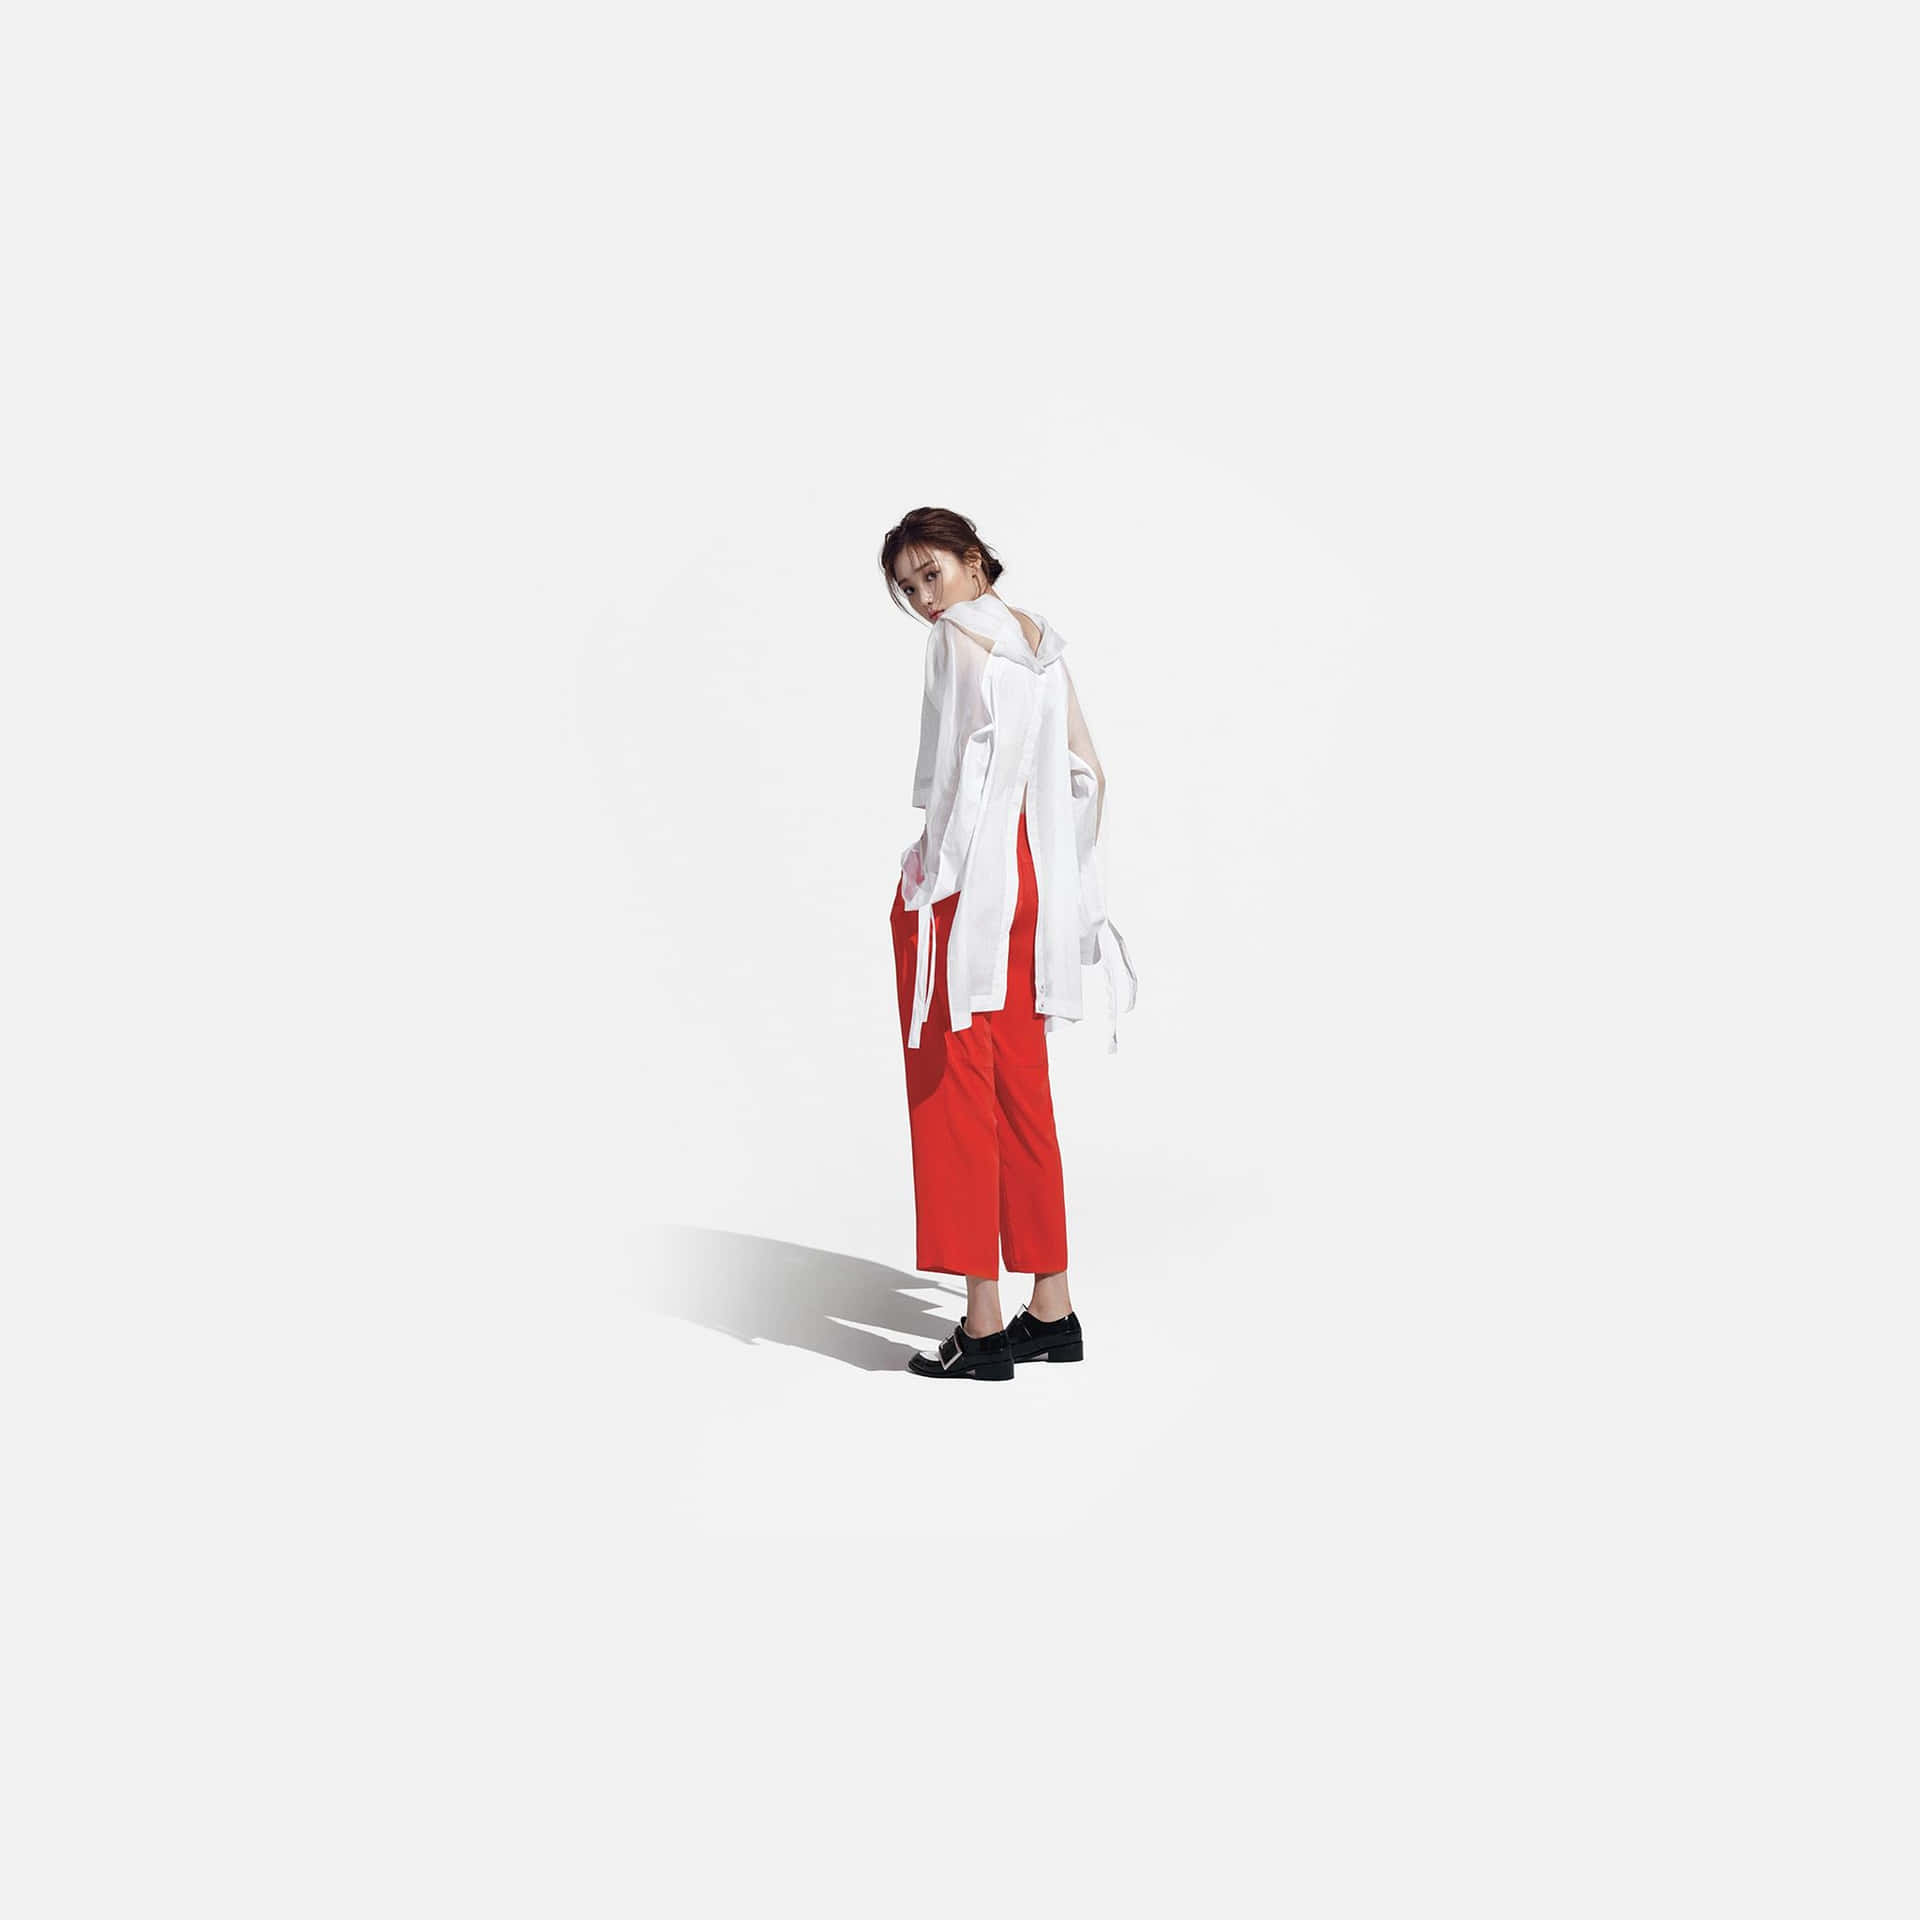 Einefrau In Roten Hosen Steht Auf Einem Weißen Hintergrund. Wallpaper